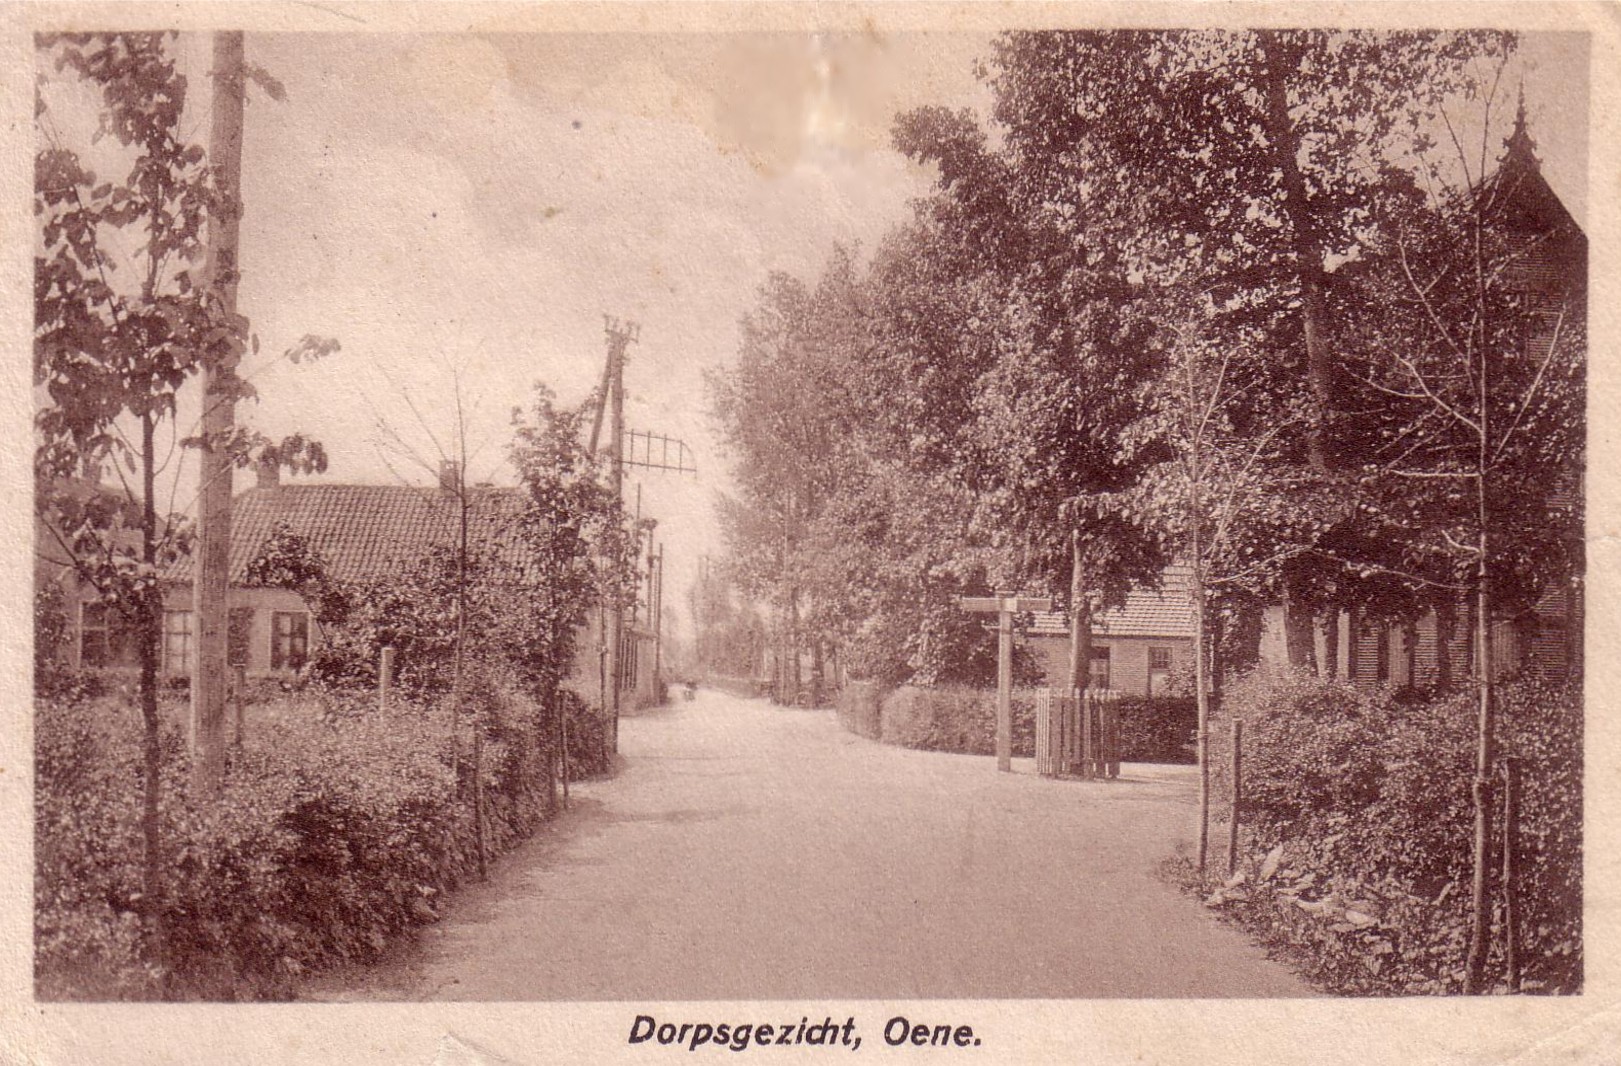 Houtweg-Horthoekerweg 1926-1fd09b8a.jpg